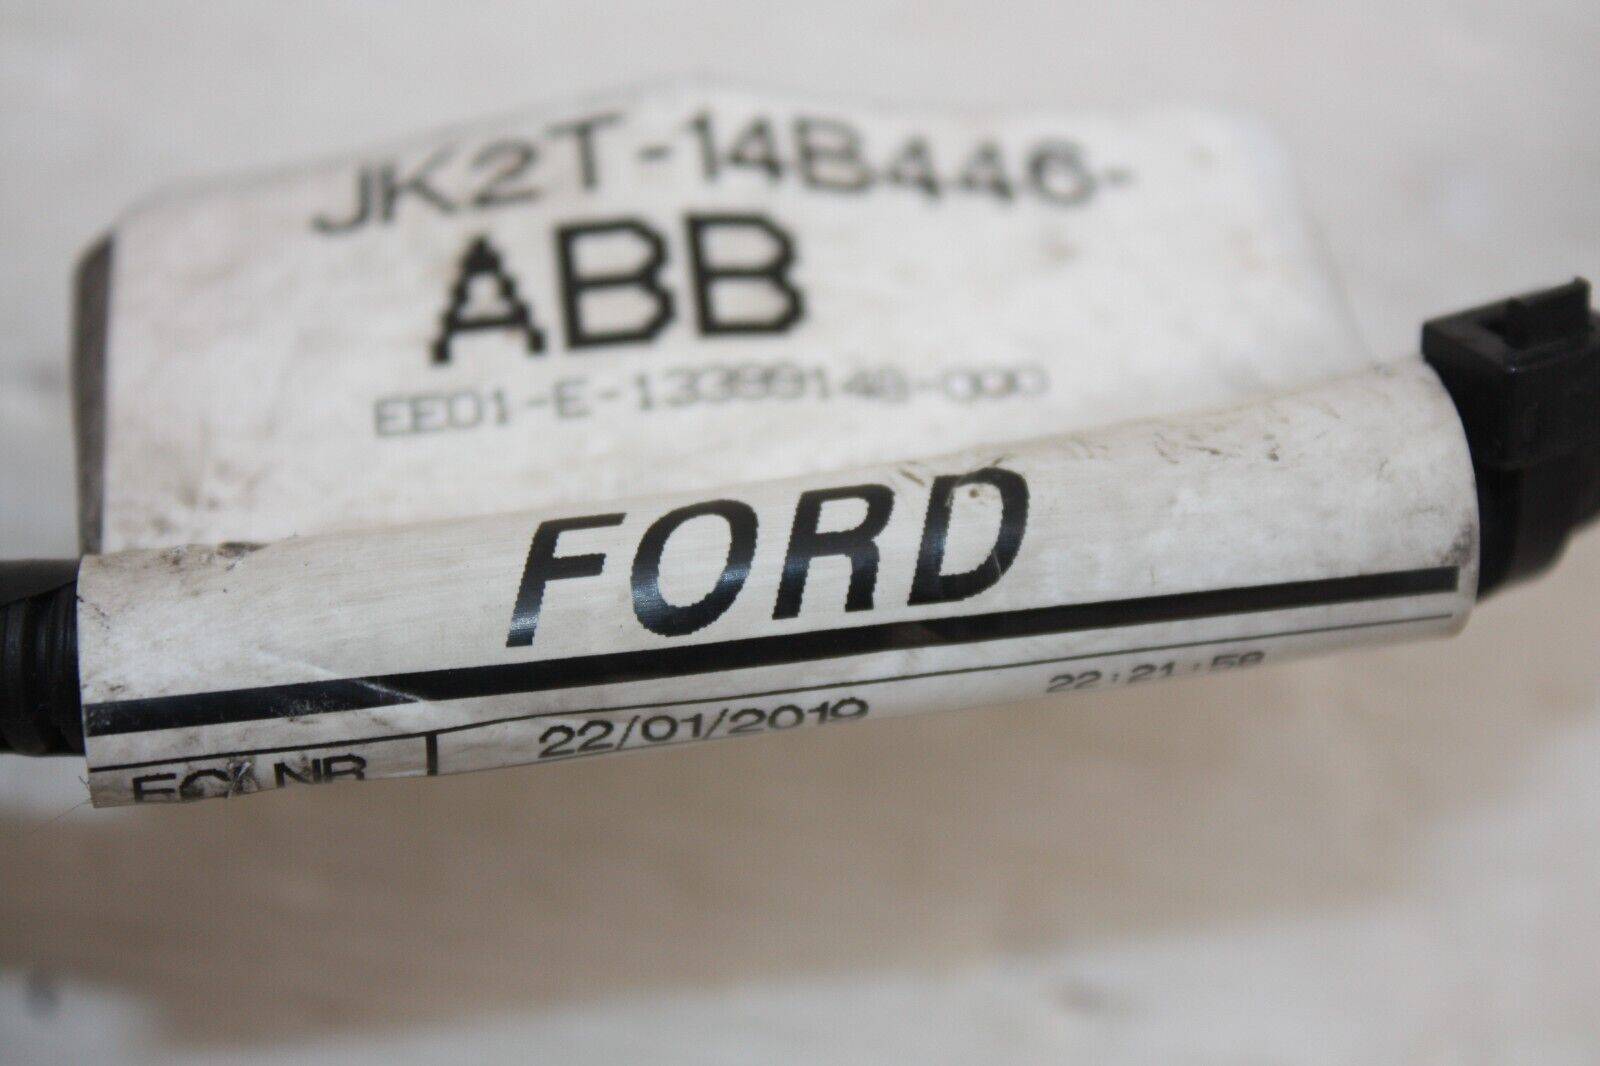 Ford-Tourneo-Custom-Front-Bumper-Loom-Wiring-JK2T-14B446-ABB-Genuine-175662381744-10